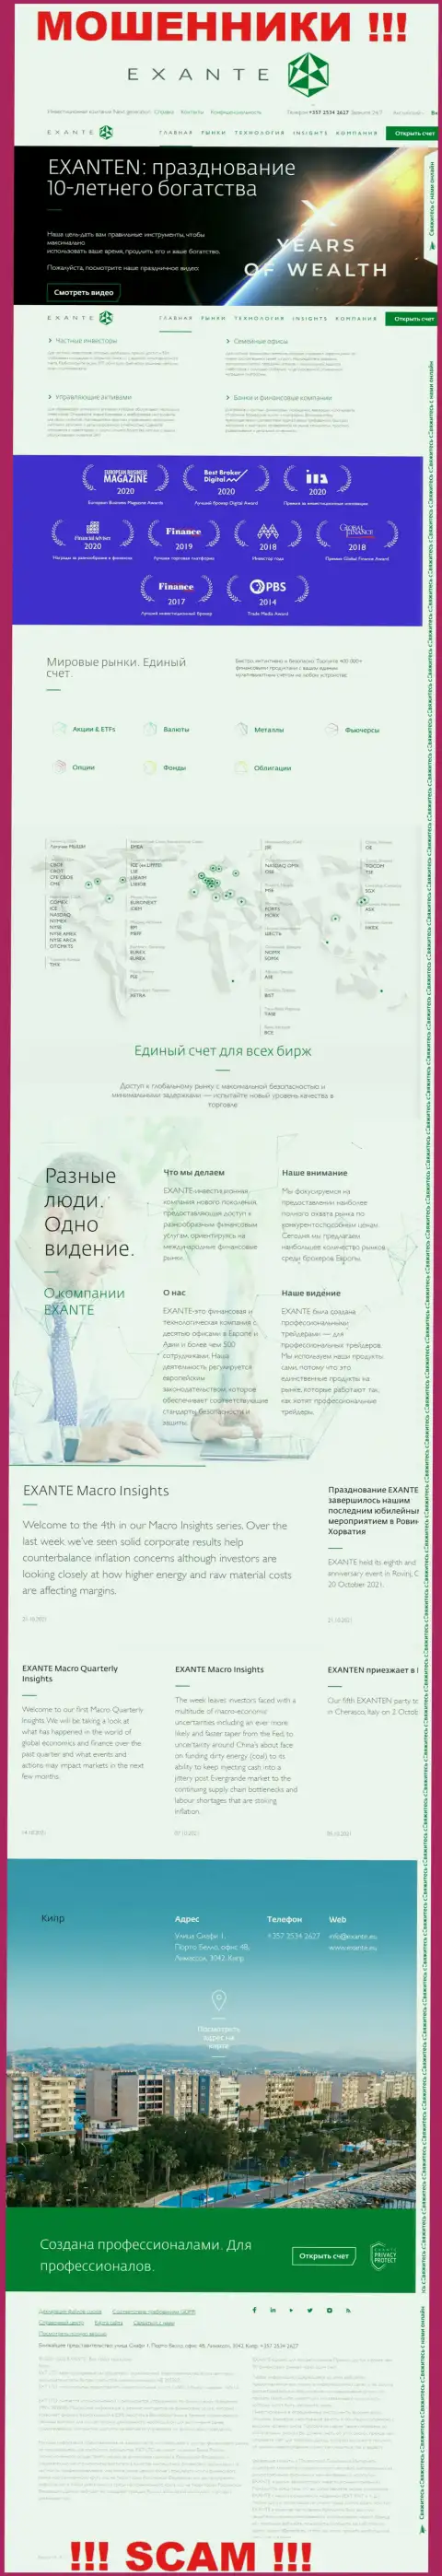 Exante Eu - это информационный портал организации ЭКСАНТЕ, обычная страничка жуликов